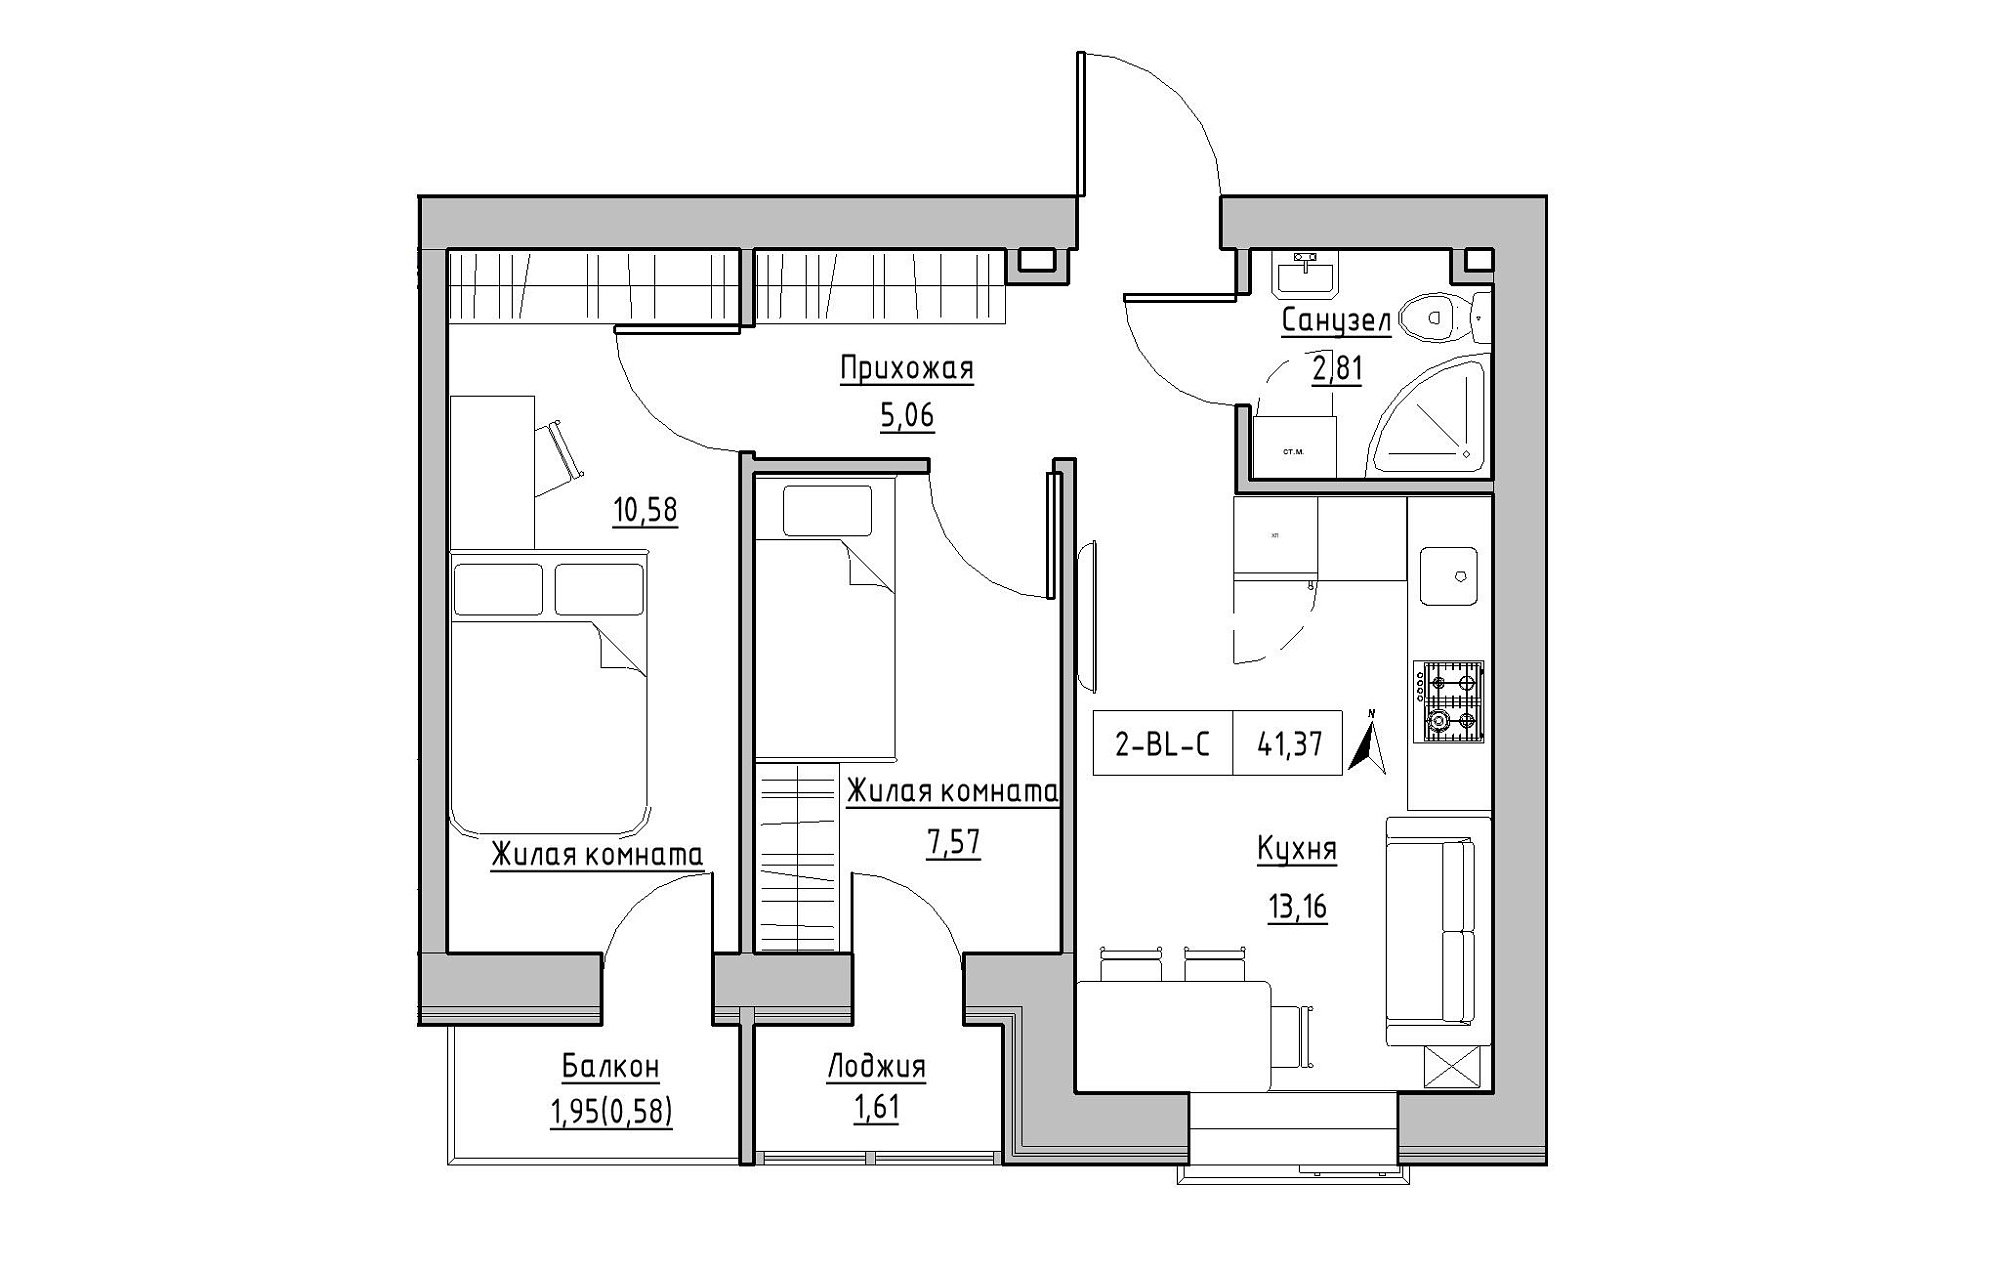 Планування 2-к квартира площею 41.37м2, KS-019-02/0011.